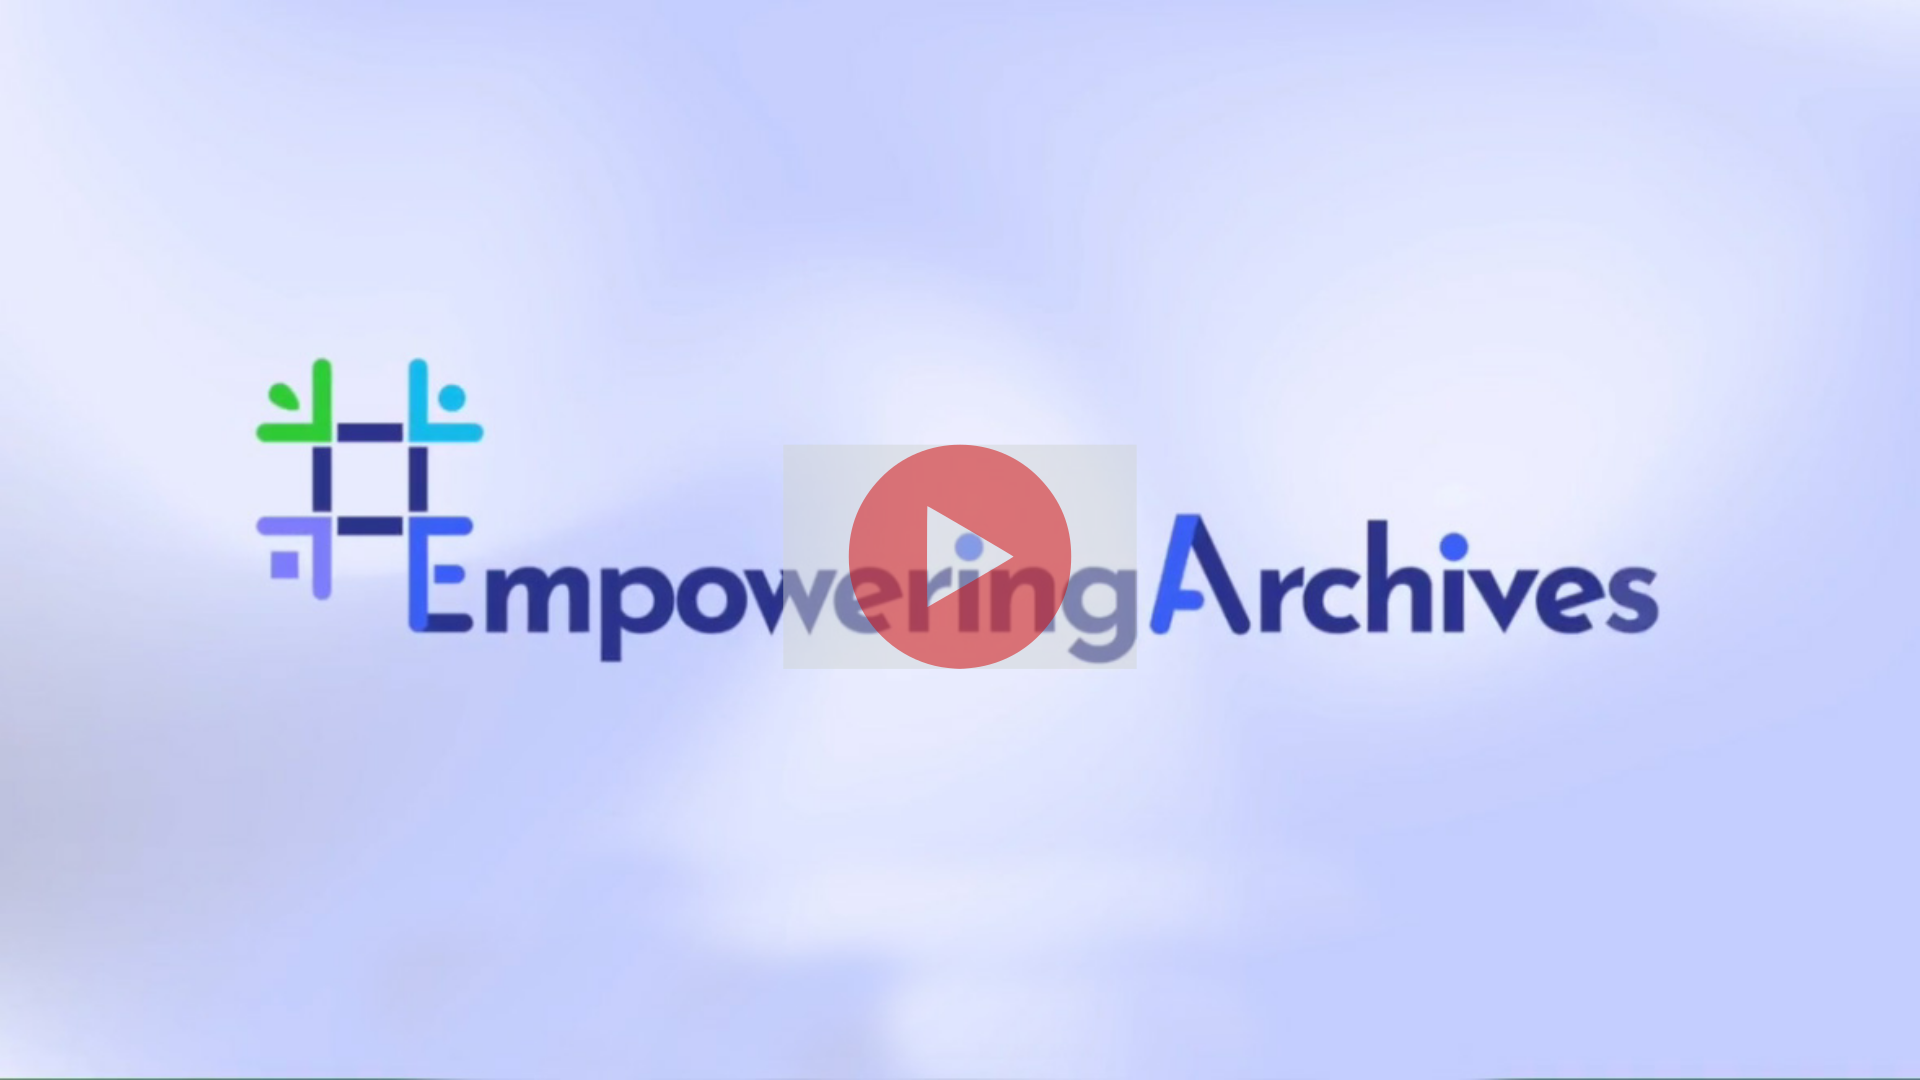 Empowering Archives - Colaboração e networking na Assembleia da República